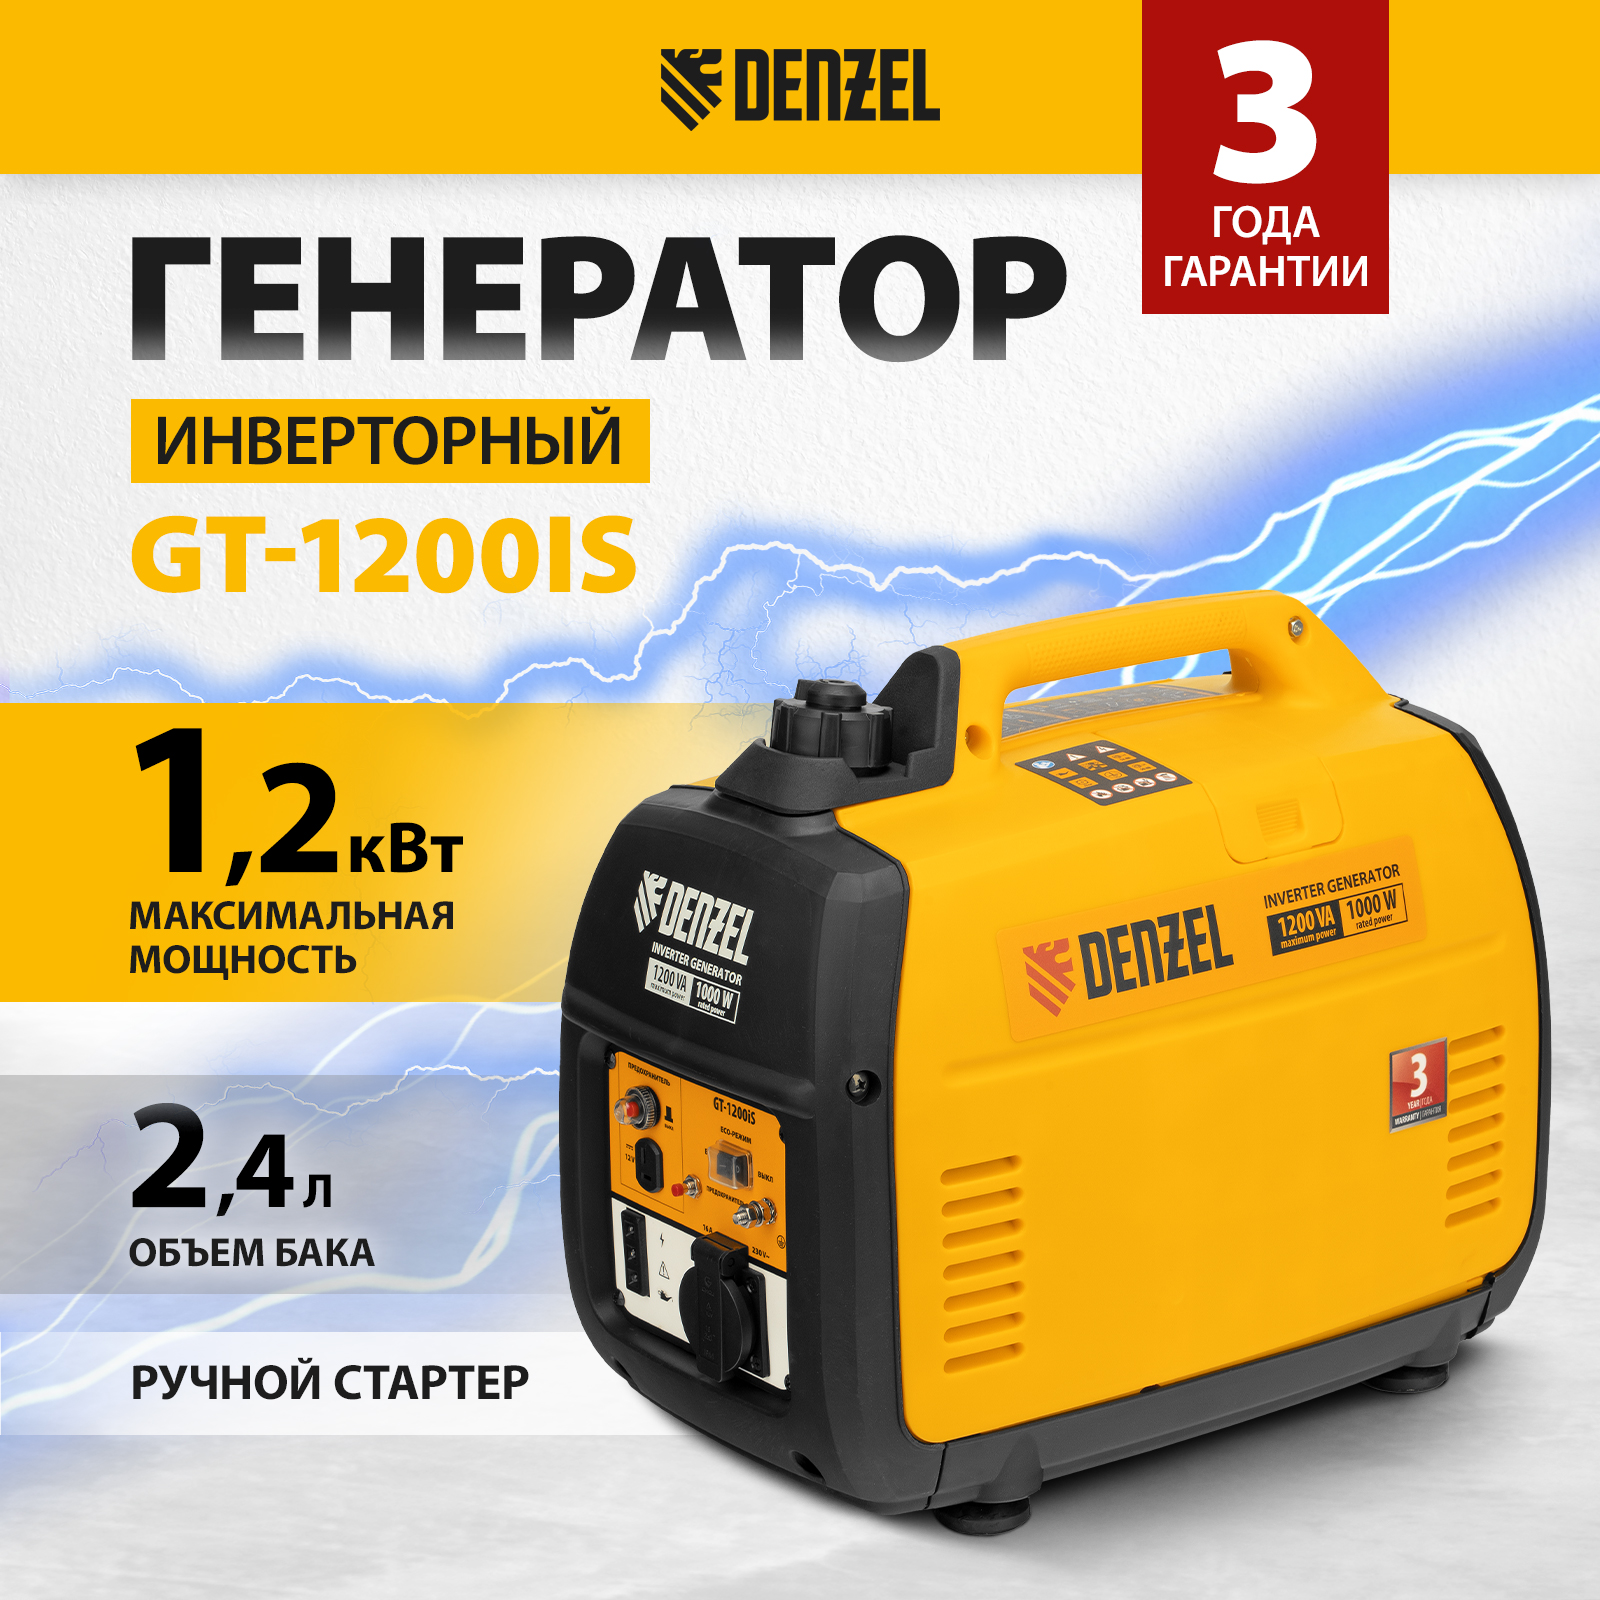 Генератор инверторный GT-1200iS Denzel,94701,1,2 кВт,230 В,бак 2,4 л,ручной старт